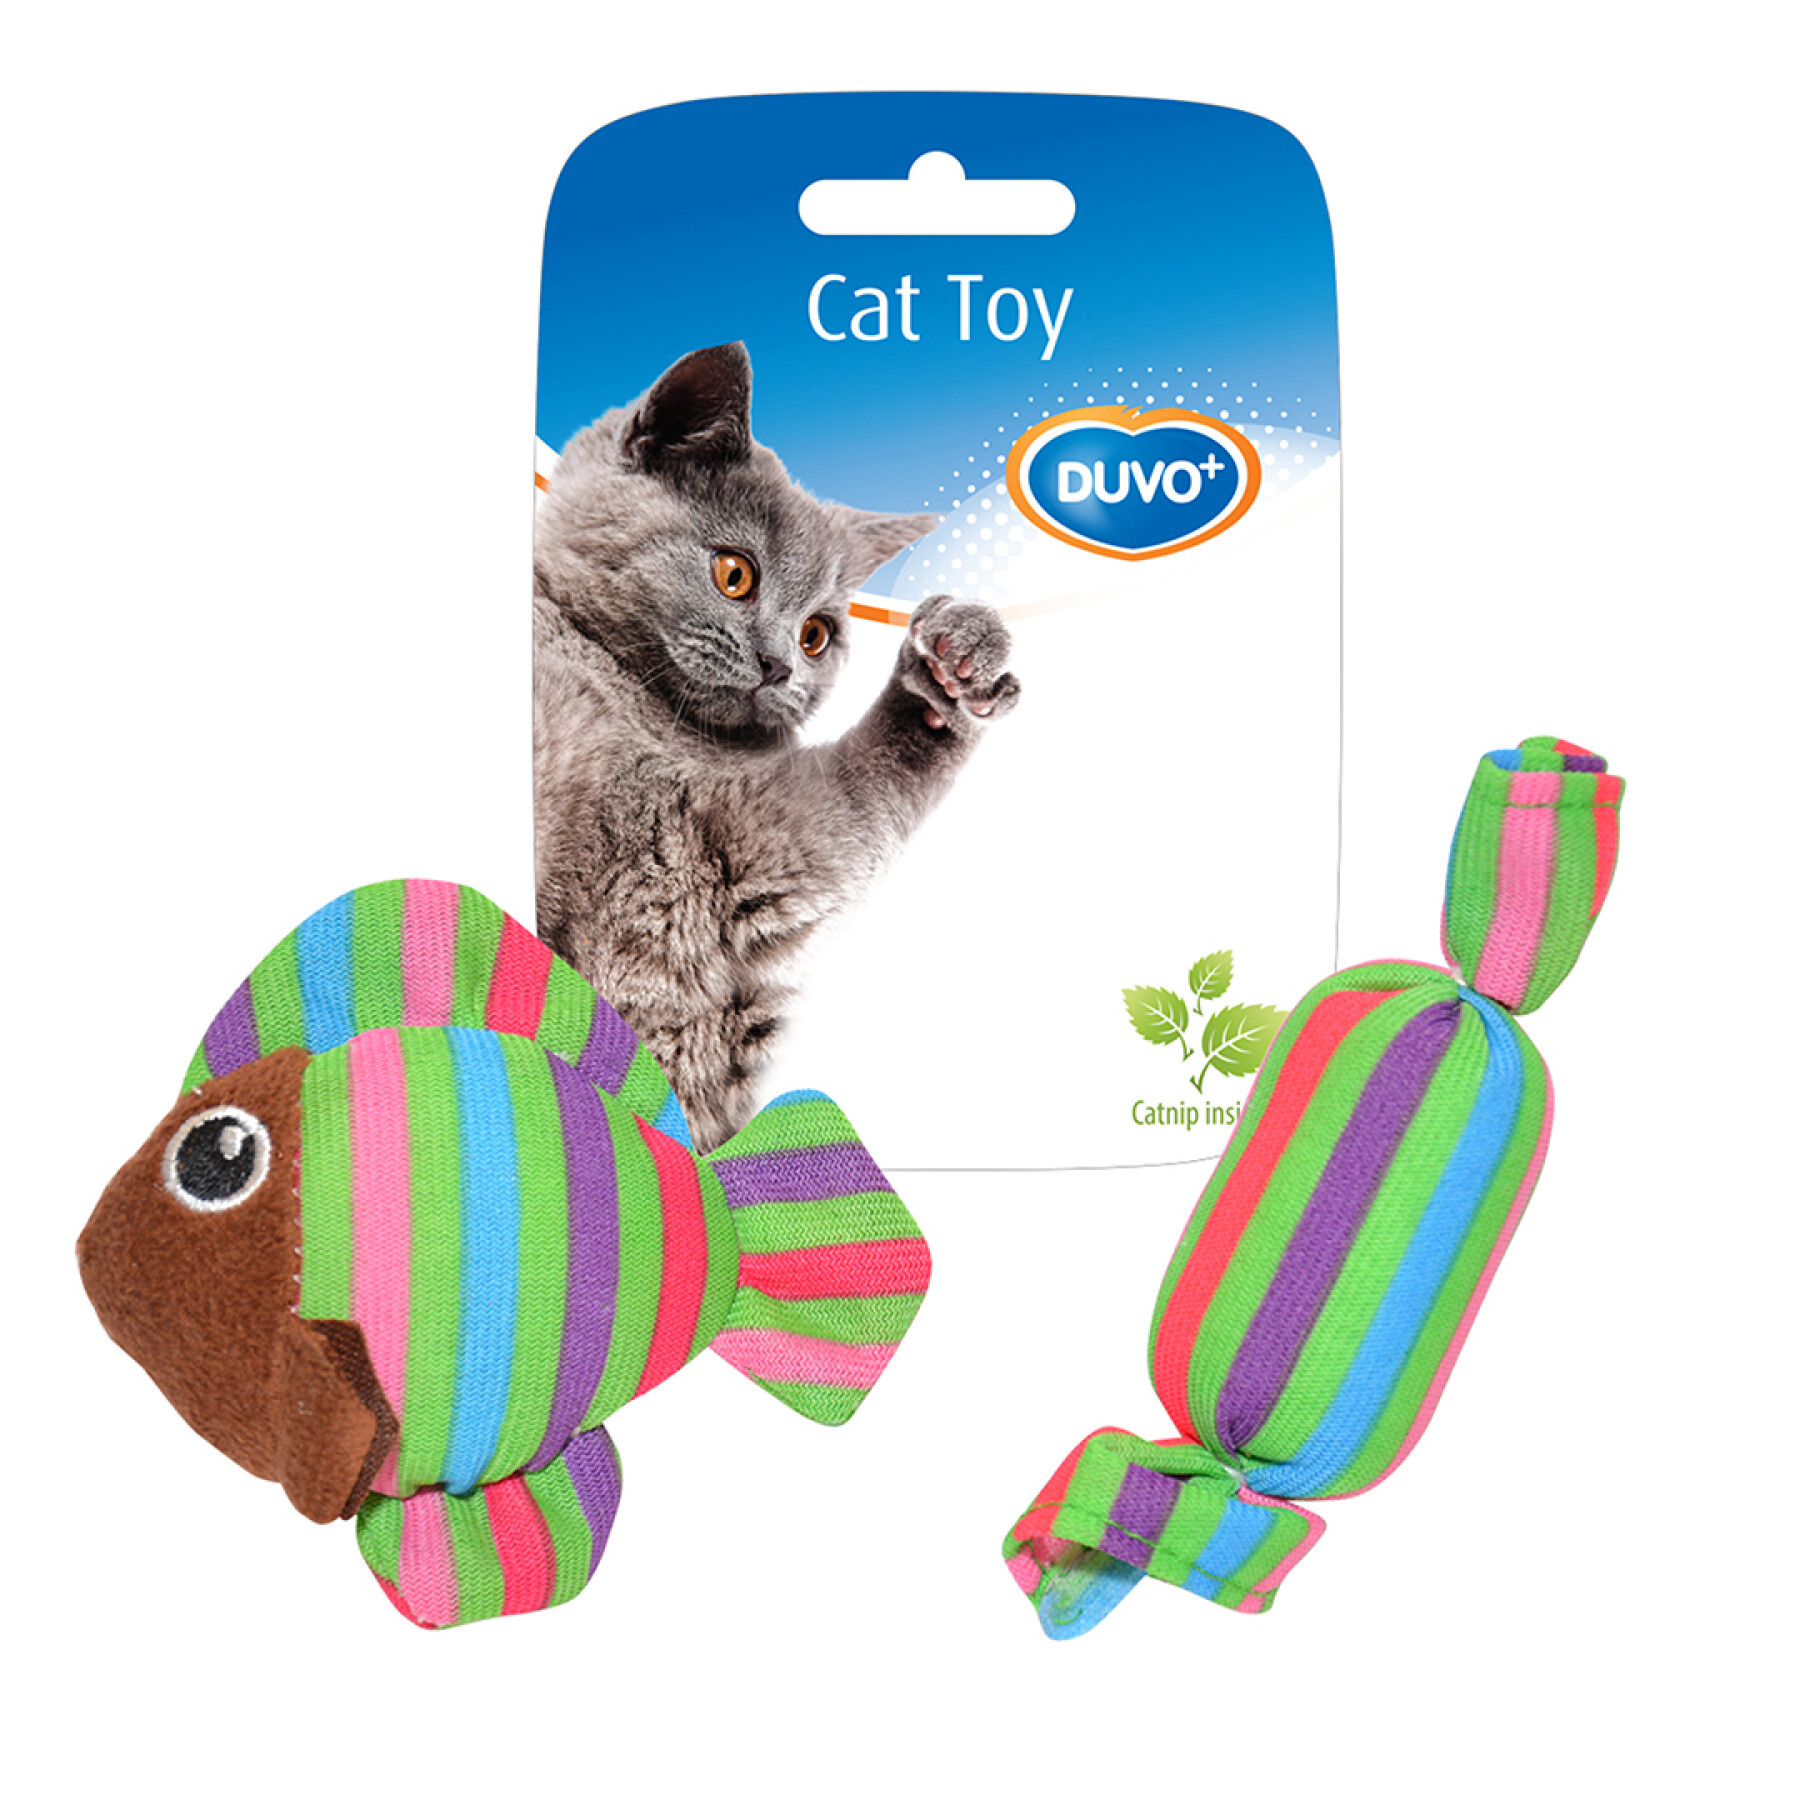 Brinquedo de peluche com peixes e doces para gatos Duvoplus